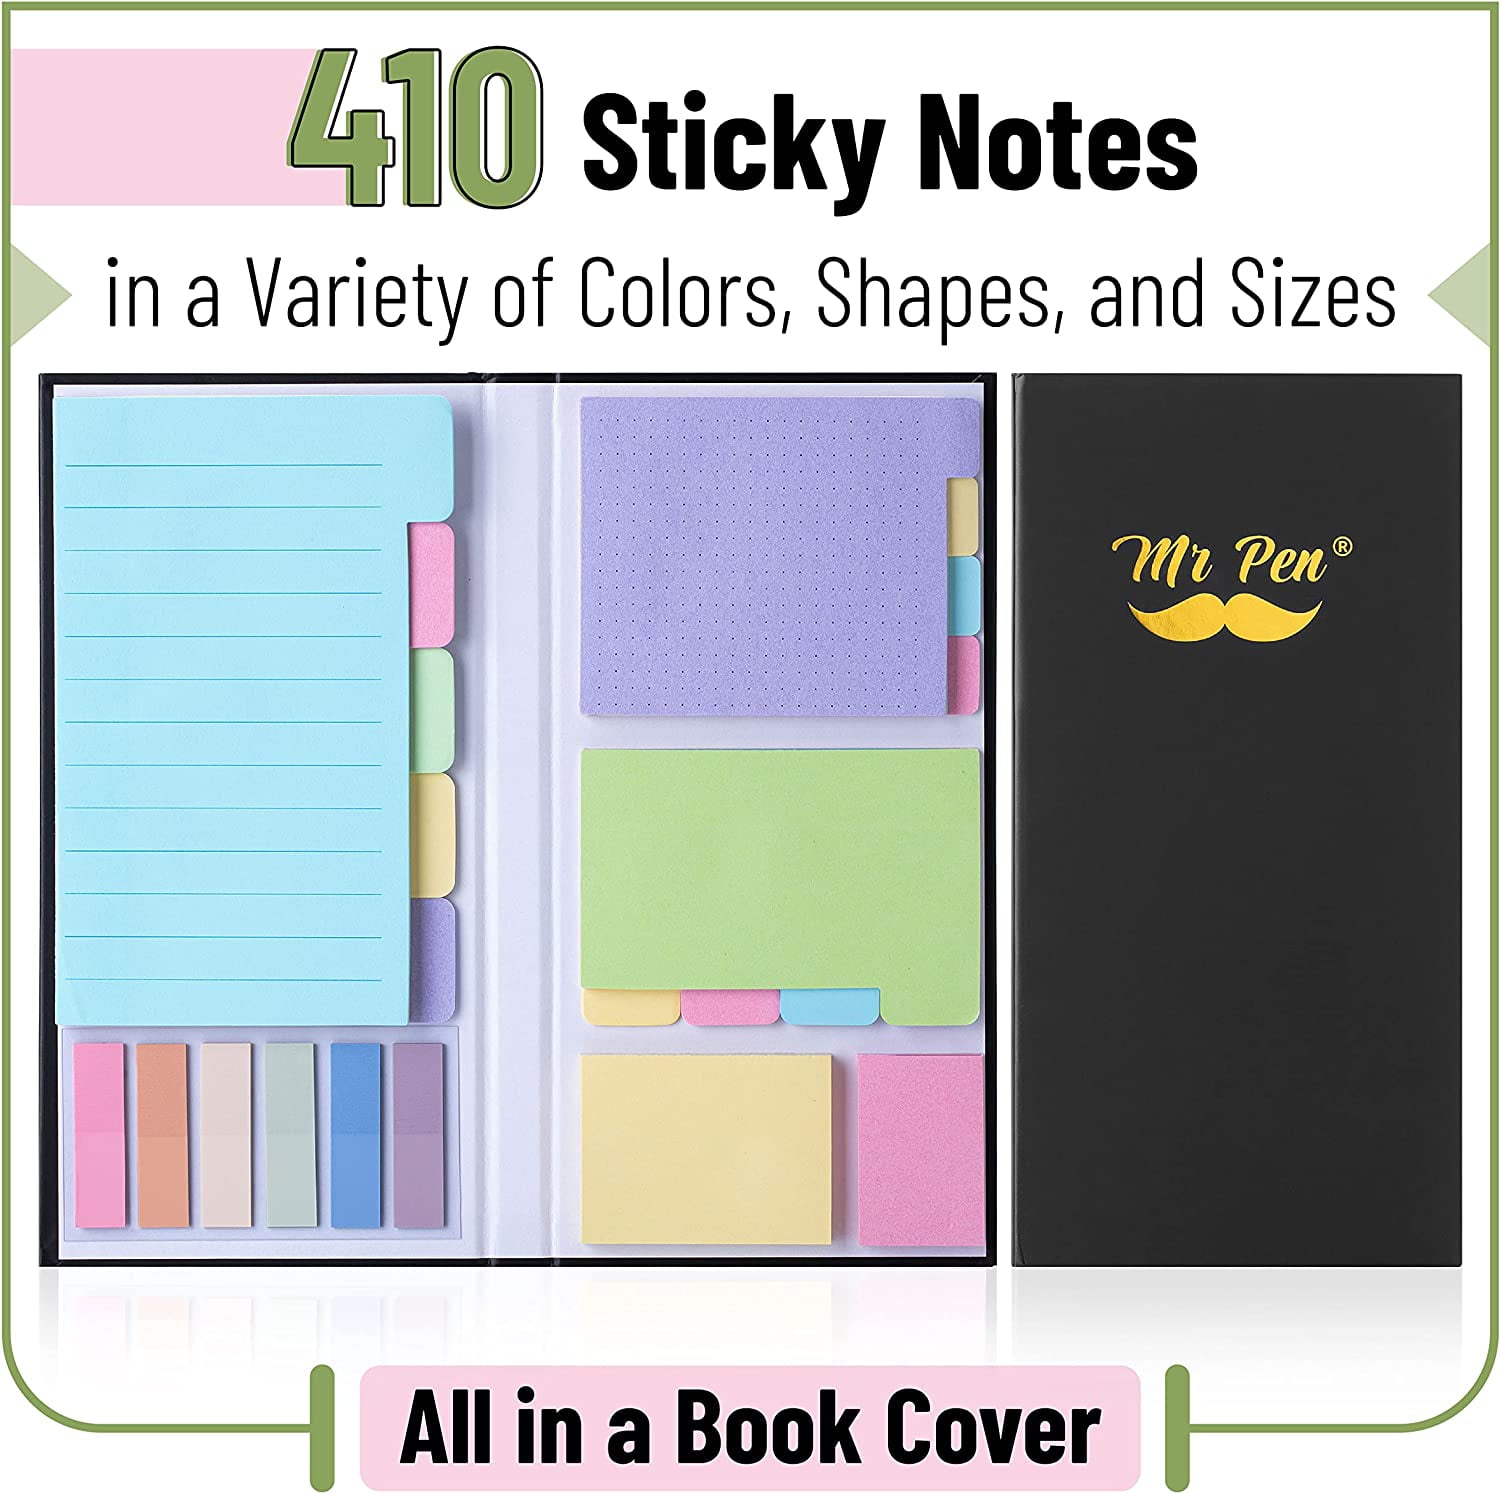  Mr. Pen- Sticky Noted Gift Box, 305 pcs, Pastel